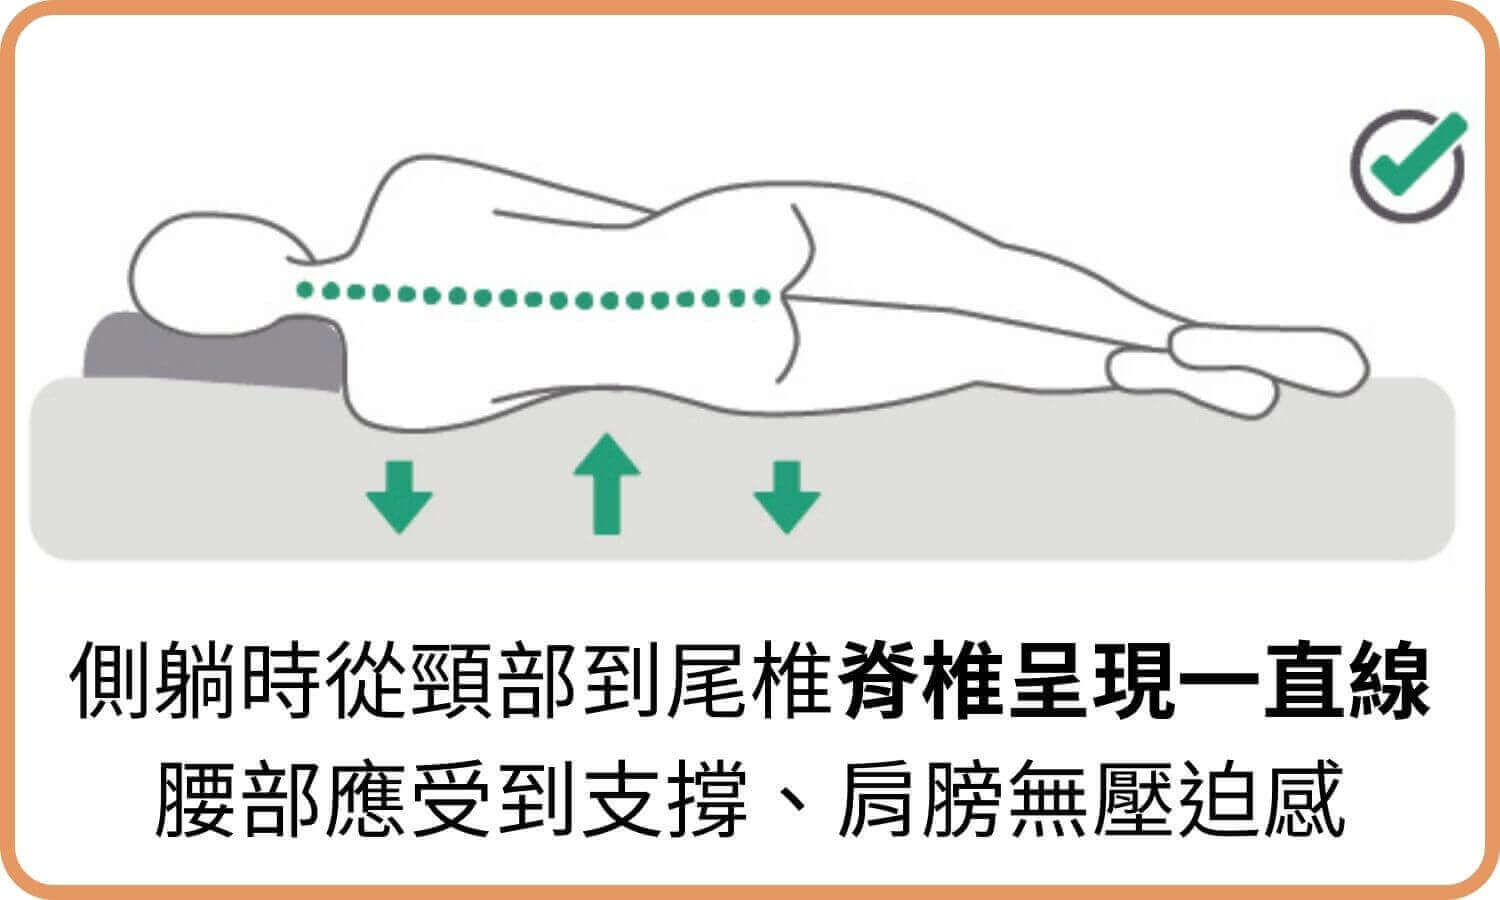 側躺時從頸部到尾椎脊椎呈現一直線，腰部應受到支撐、肩膀無壓迫感